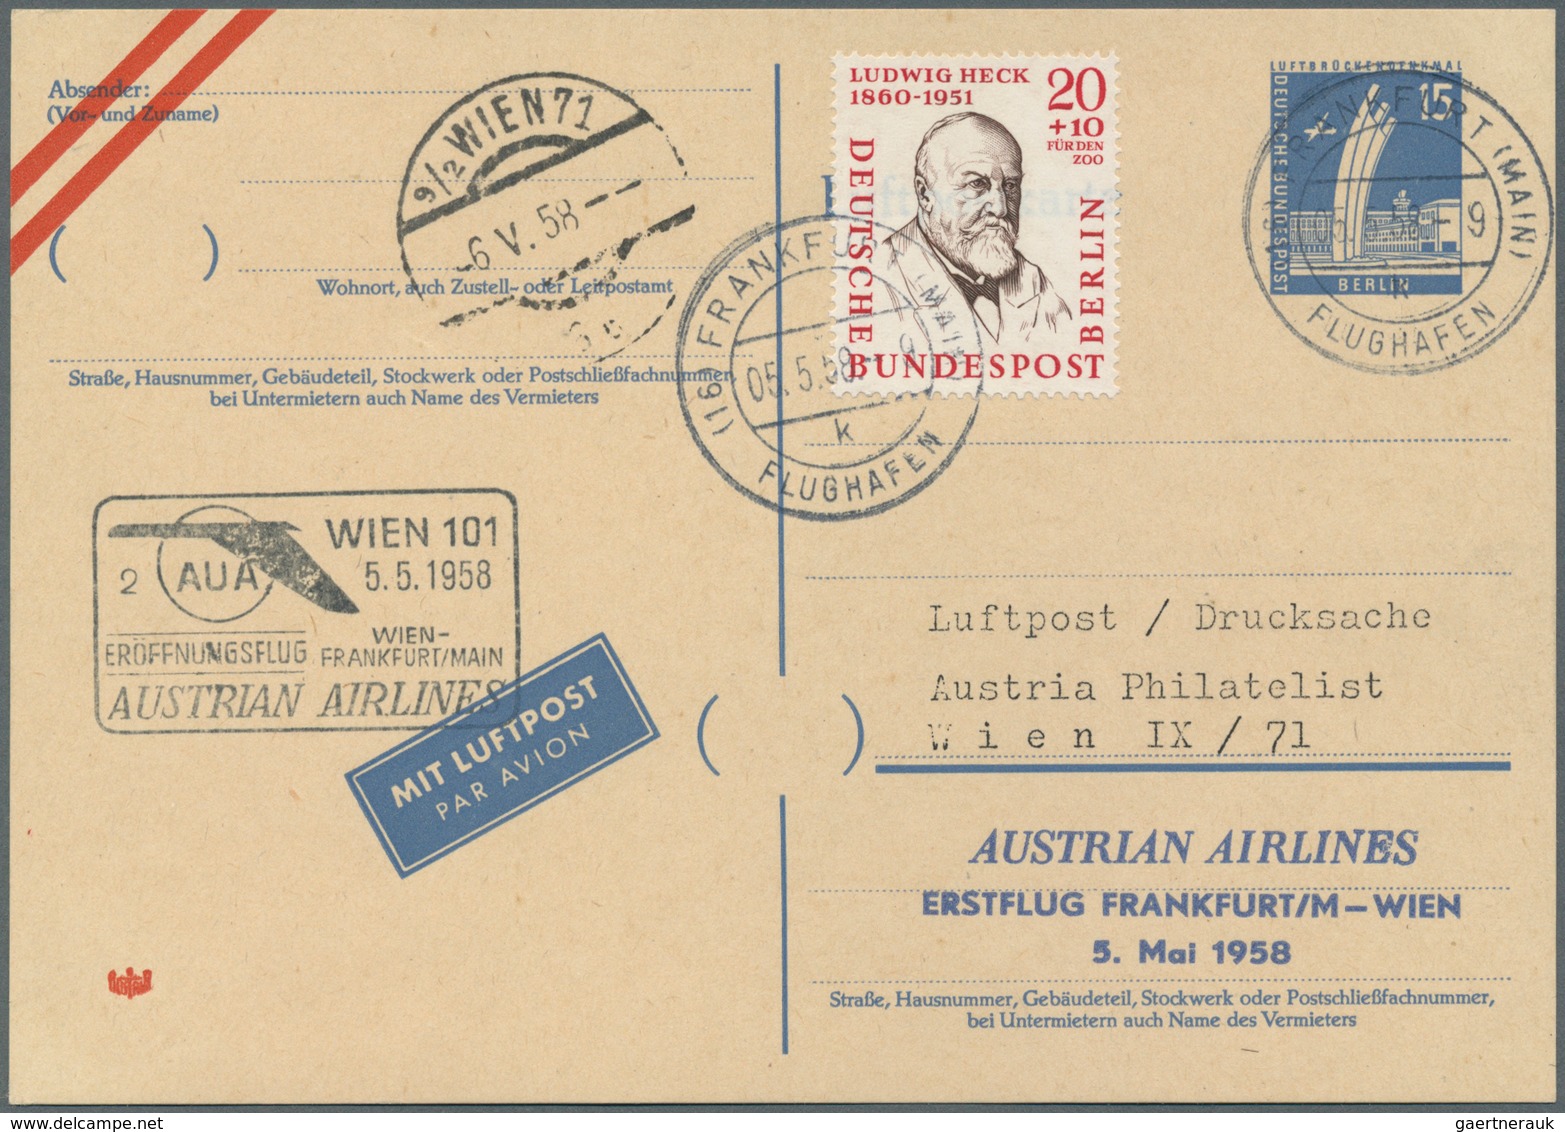 Österreich - Flugpost: 1958/1971, AUA - Austrian Airlines, sehr gehaltvolle überkomplette Sammlung m